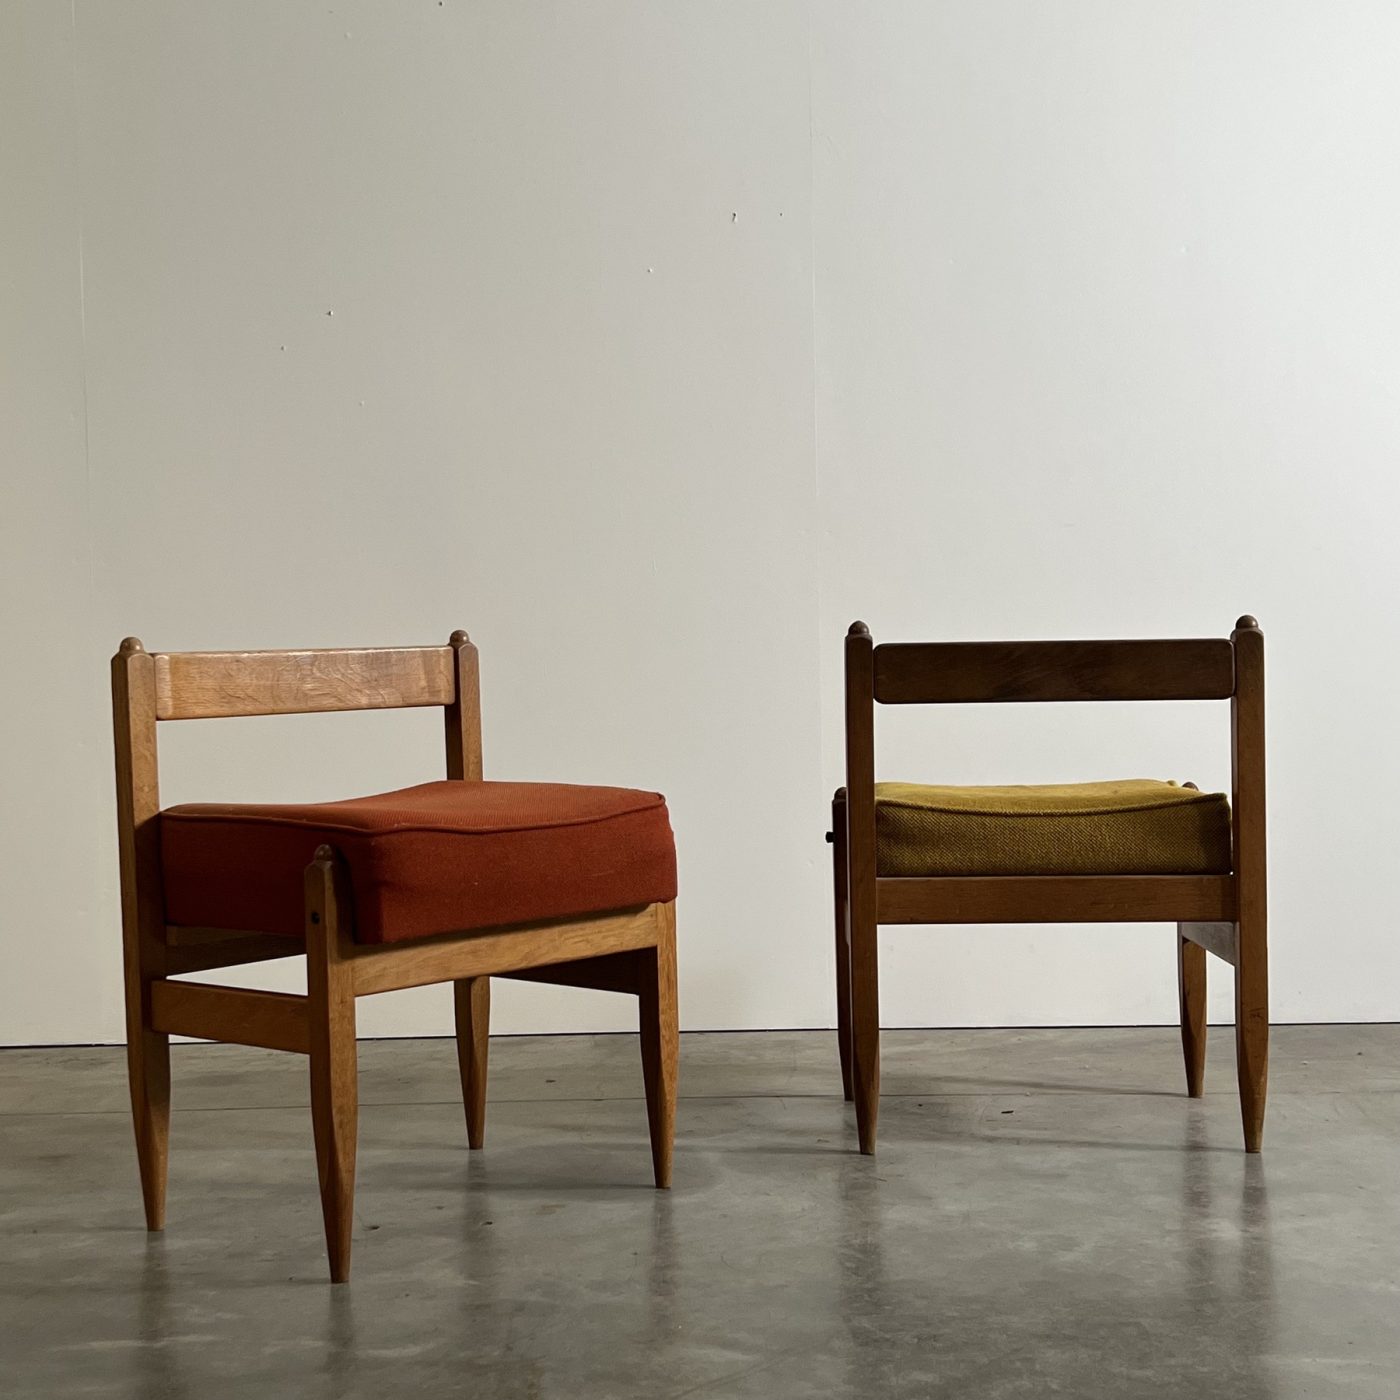 objet-vagabond-guillerme-stools0005